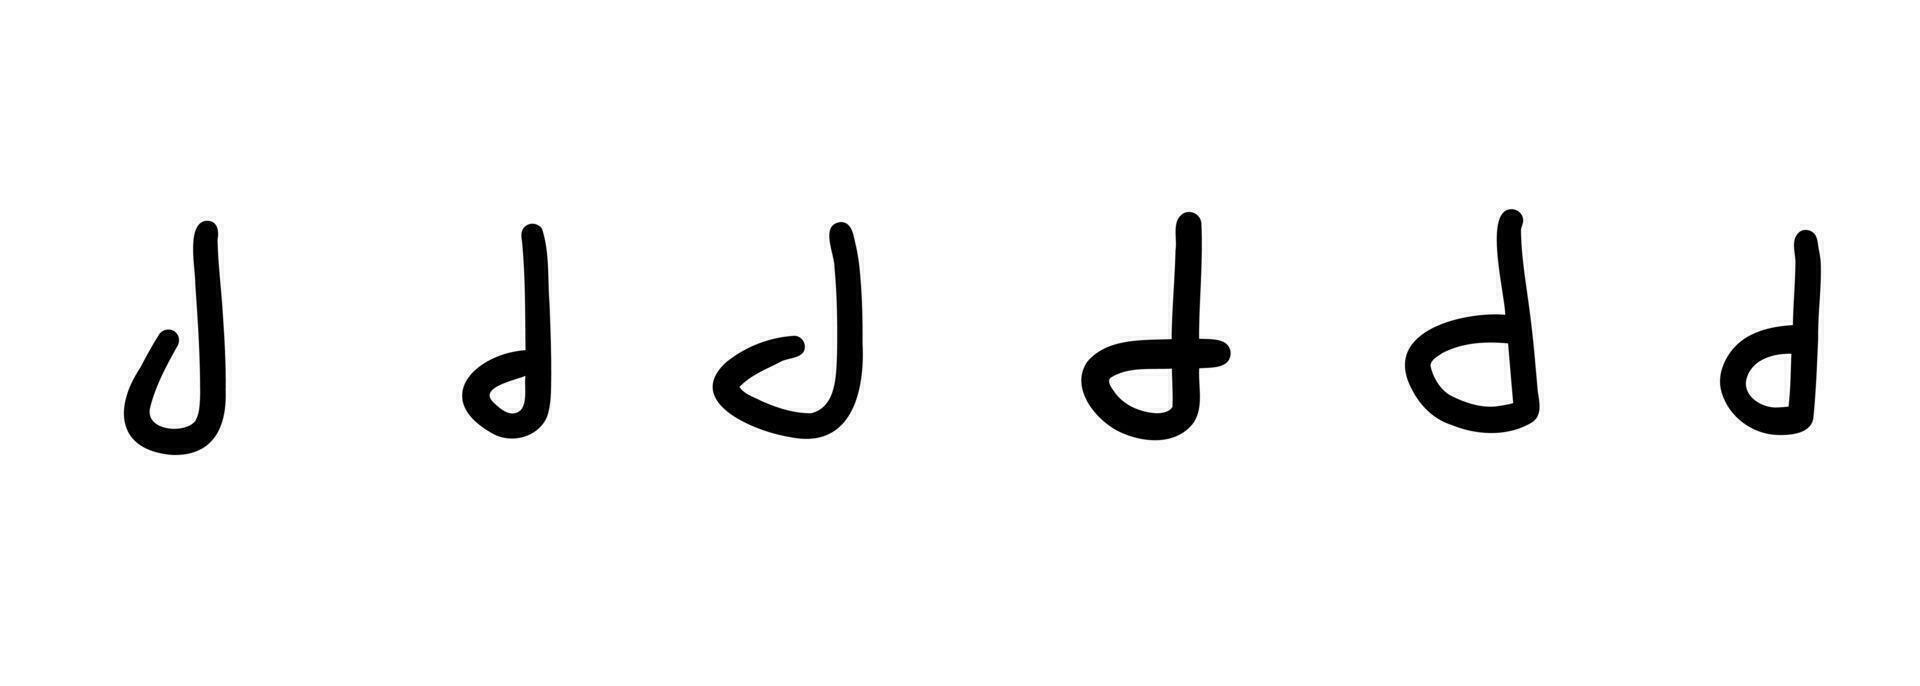 kindlich handgeschrieben schwarz Englisch Latein ABC Alphabet Brief Symbol. Vektor Illustration im Hand gezeichnet Gekritzel Stil isoliert auf Weiß Hintergrund. zum Kinder Buch, Logo, Lernen, Karte, dekorieren.